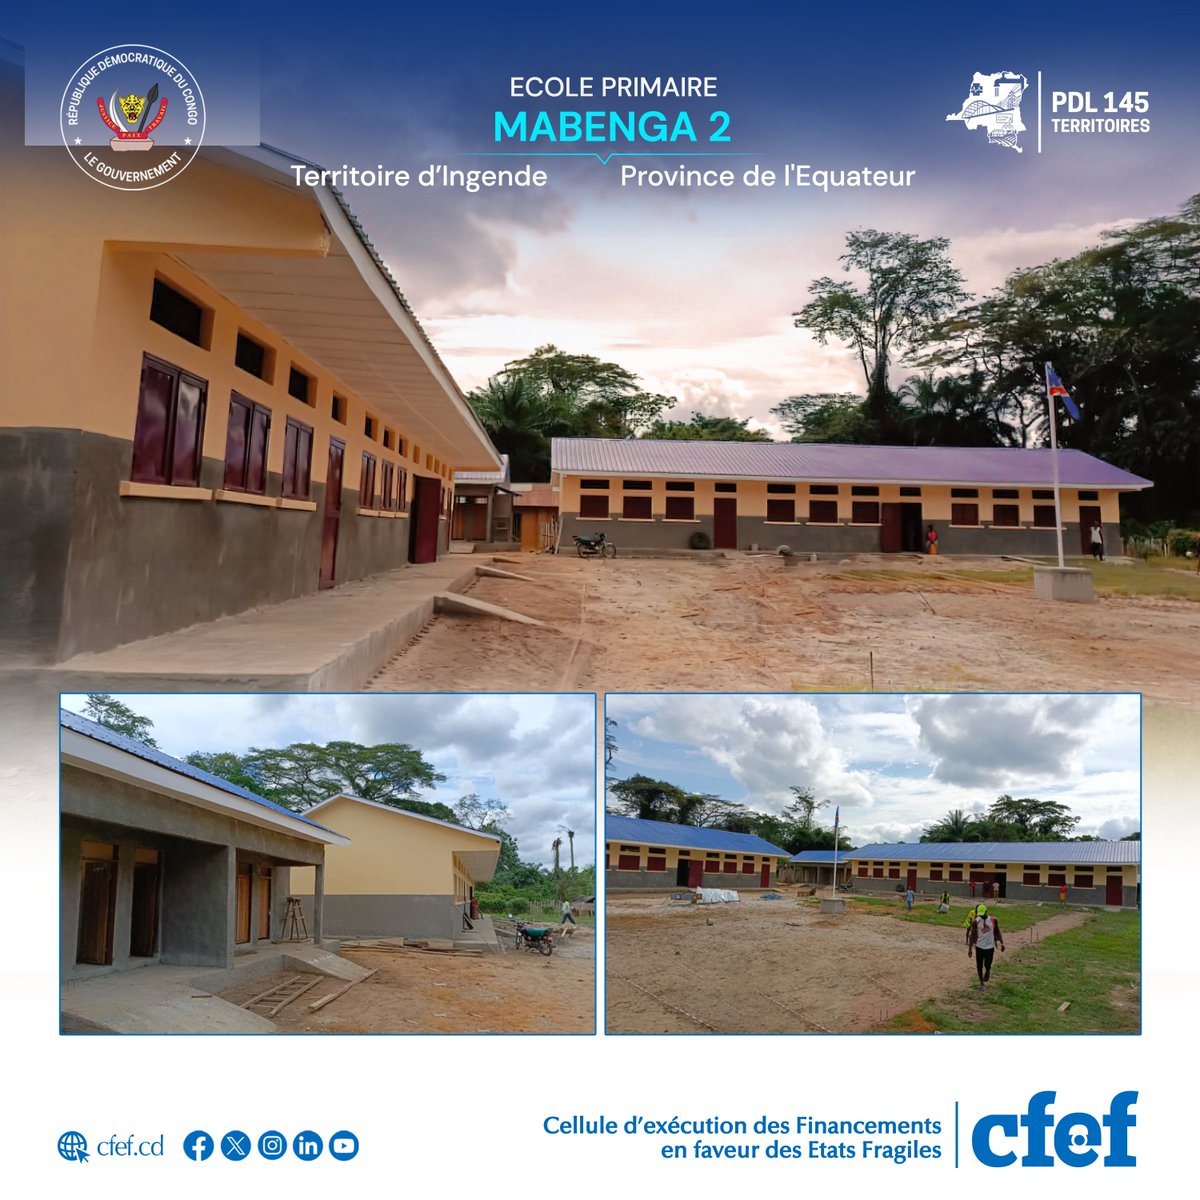 #PDL145T_RDC : Achèvement des travaux et réception de l'Ecole Primaire  MABENGA 2 dans le Territoire d'Ingende à l'Equateur
@DeCom_CFEF
@MinisterEPST 
@PlanRdc
@PrimatureRDC